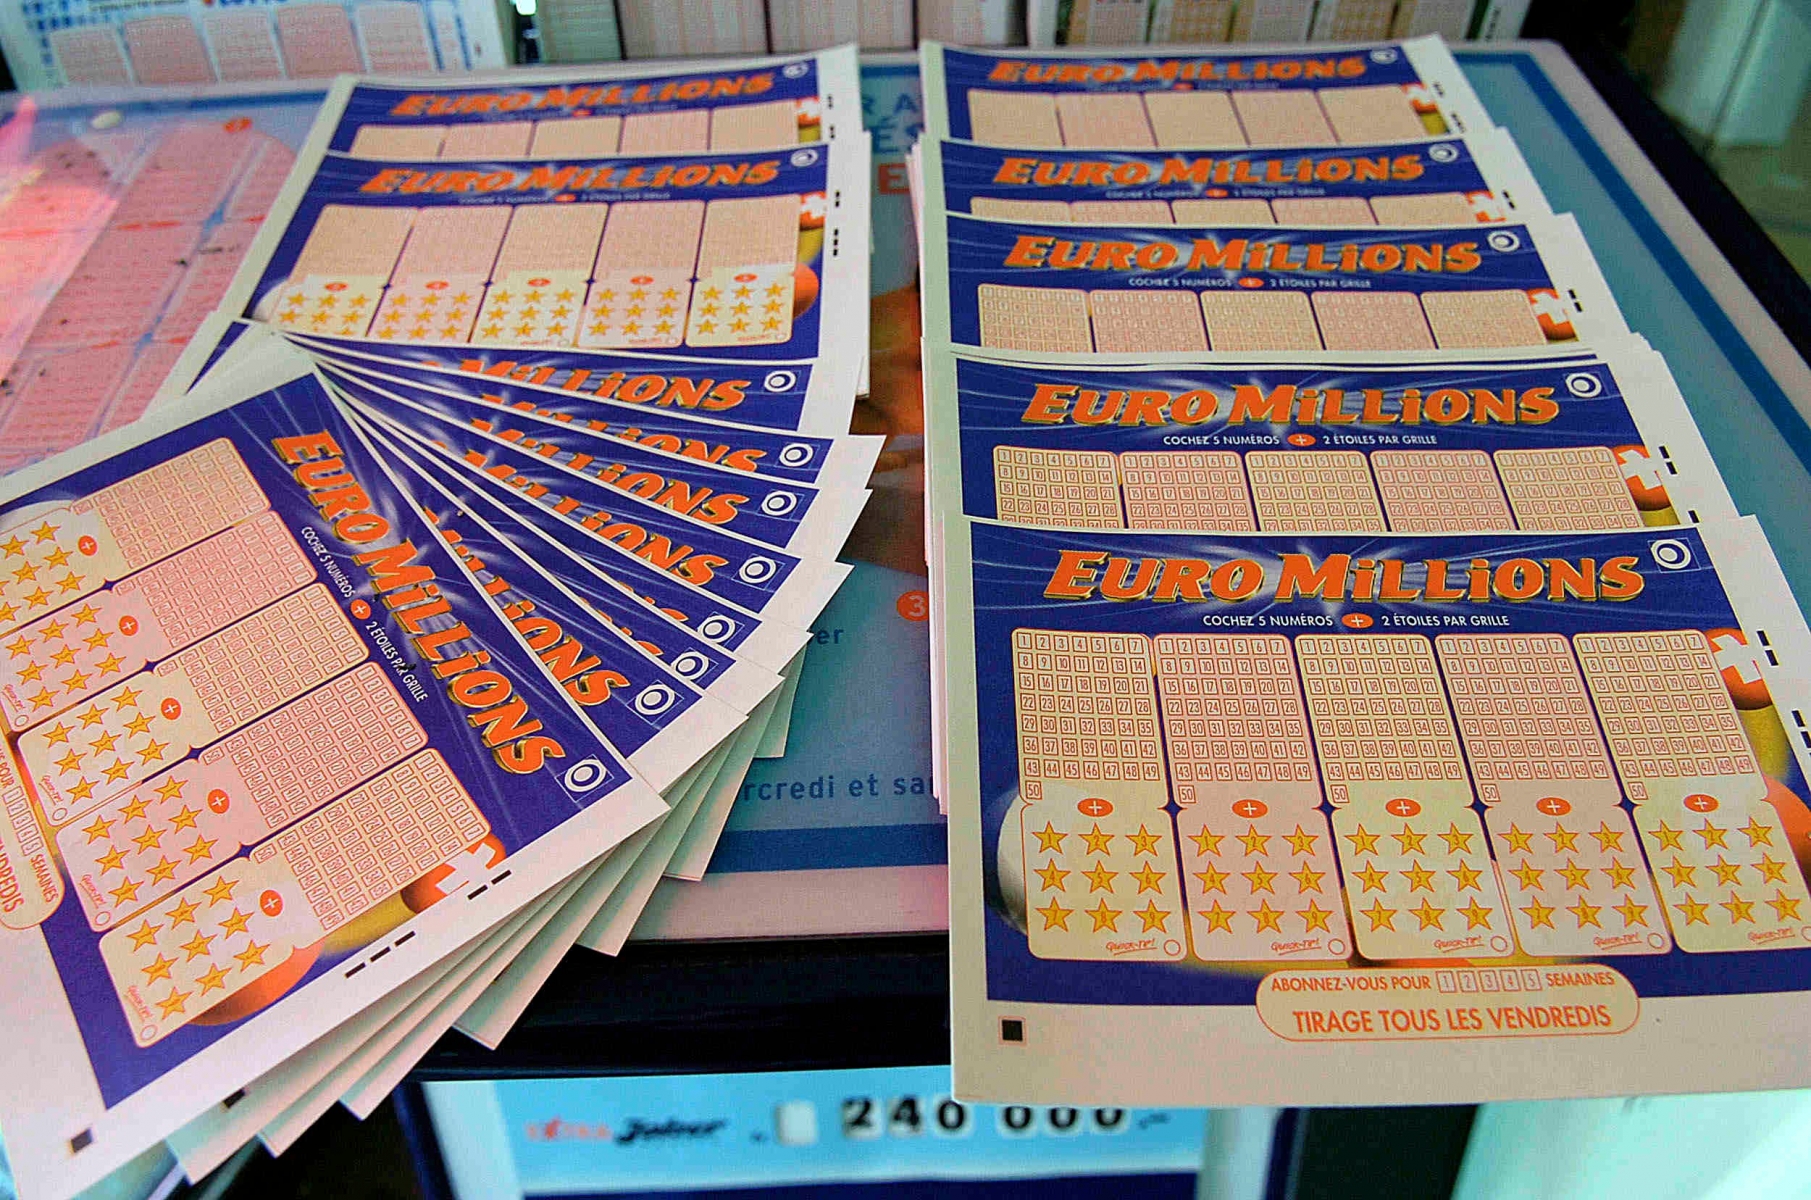 Billets de loterie pour l'Euro Millions.

La Chaux-de-Fonds
5 04 2007
Photo: Christian Galley


